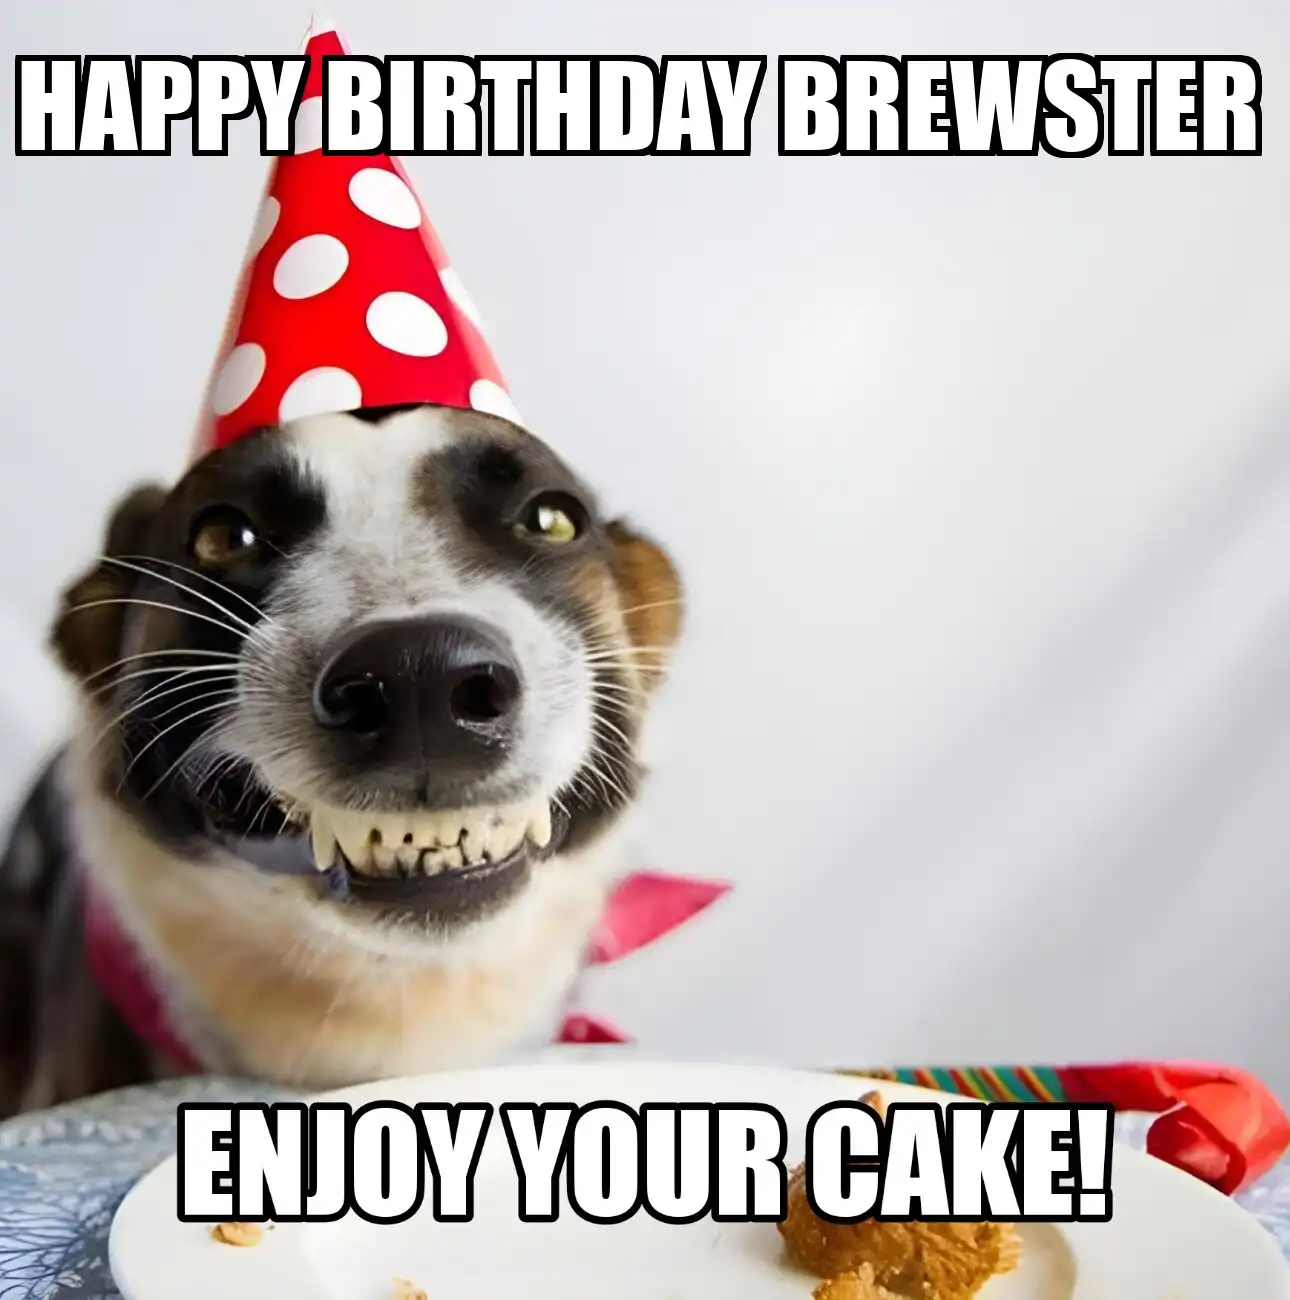 Happy Birthday Brewster Enjoy Your Cake Dog Meme